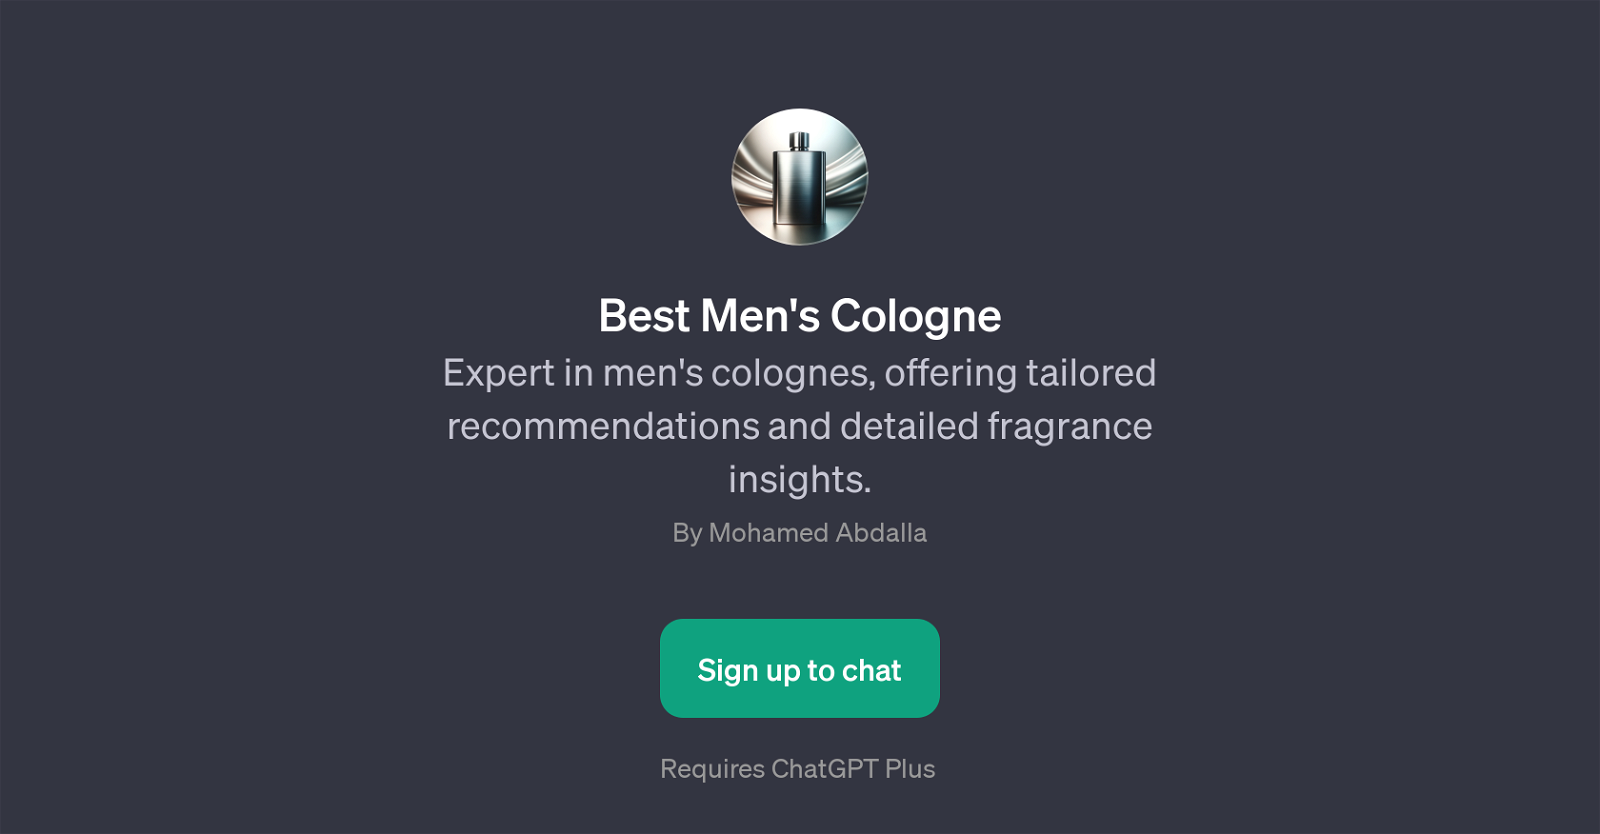 Best Men's Cologne website